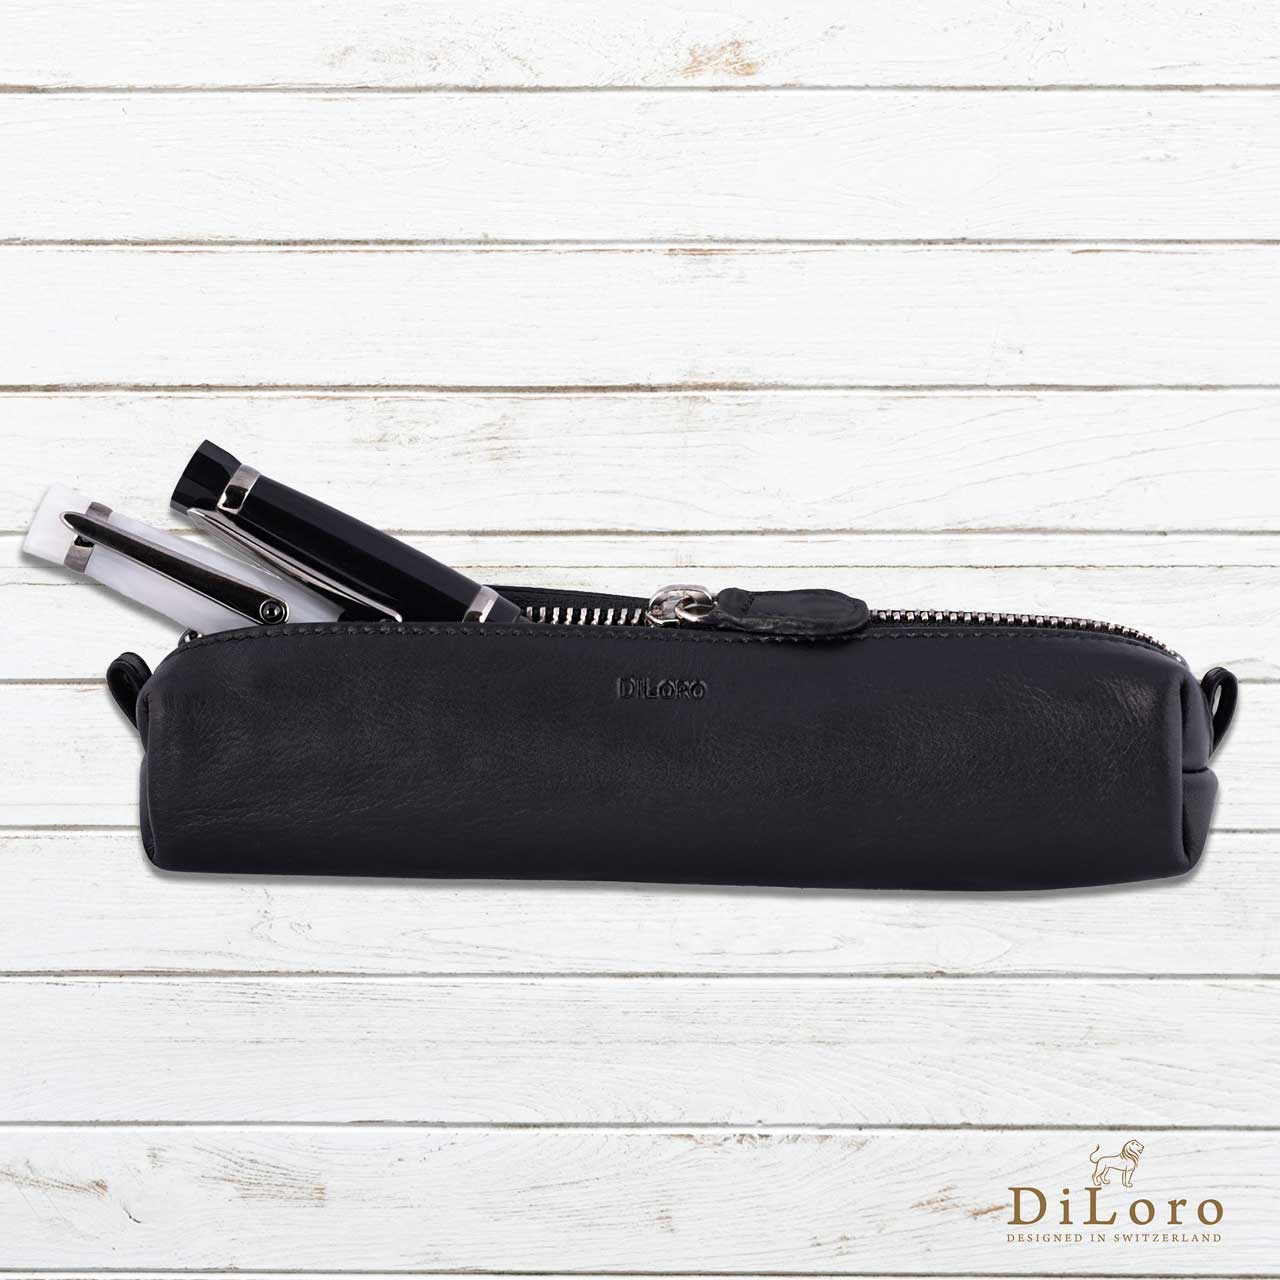 DiLoro Single Leather Pen Pencil Holder | One Pen Bugatti Tan